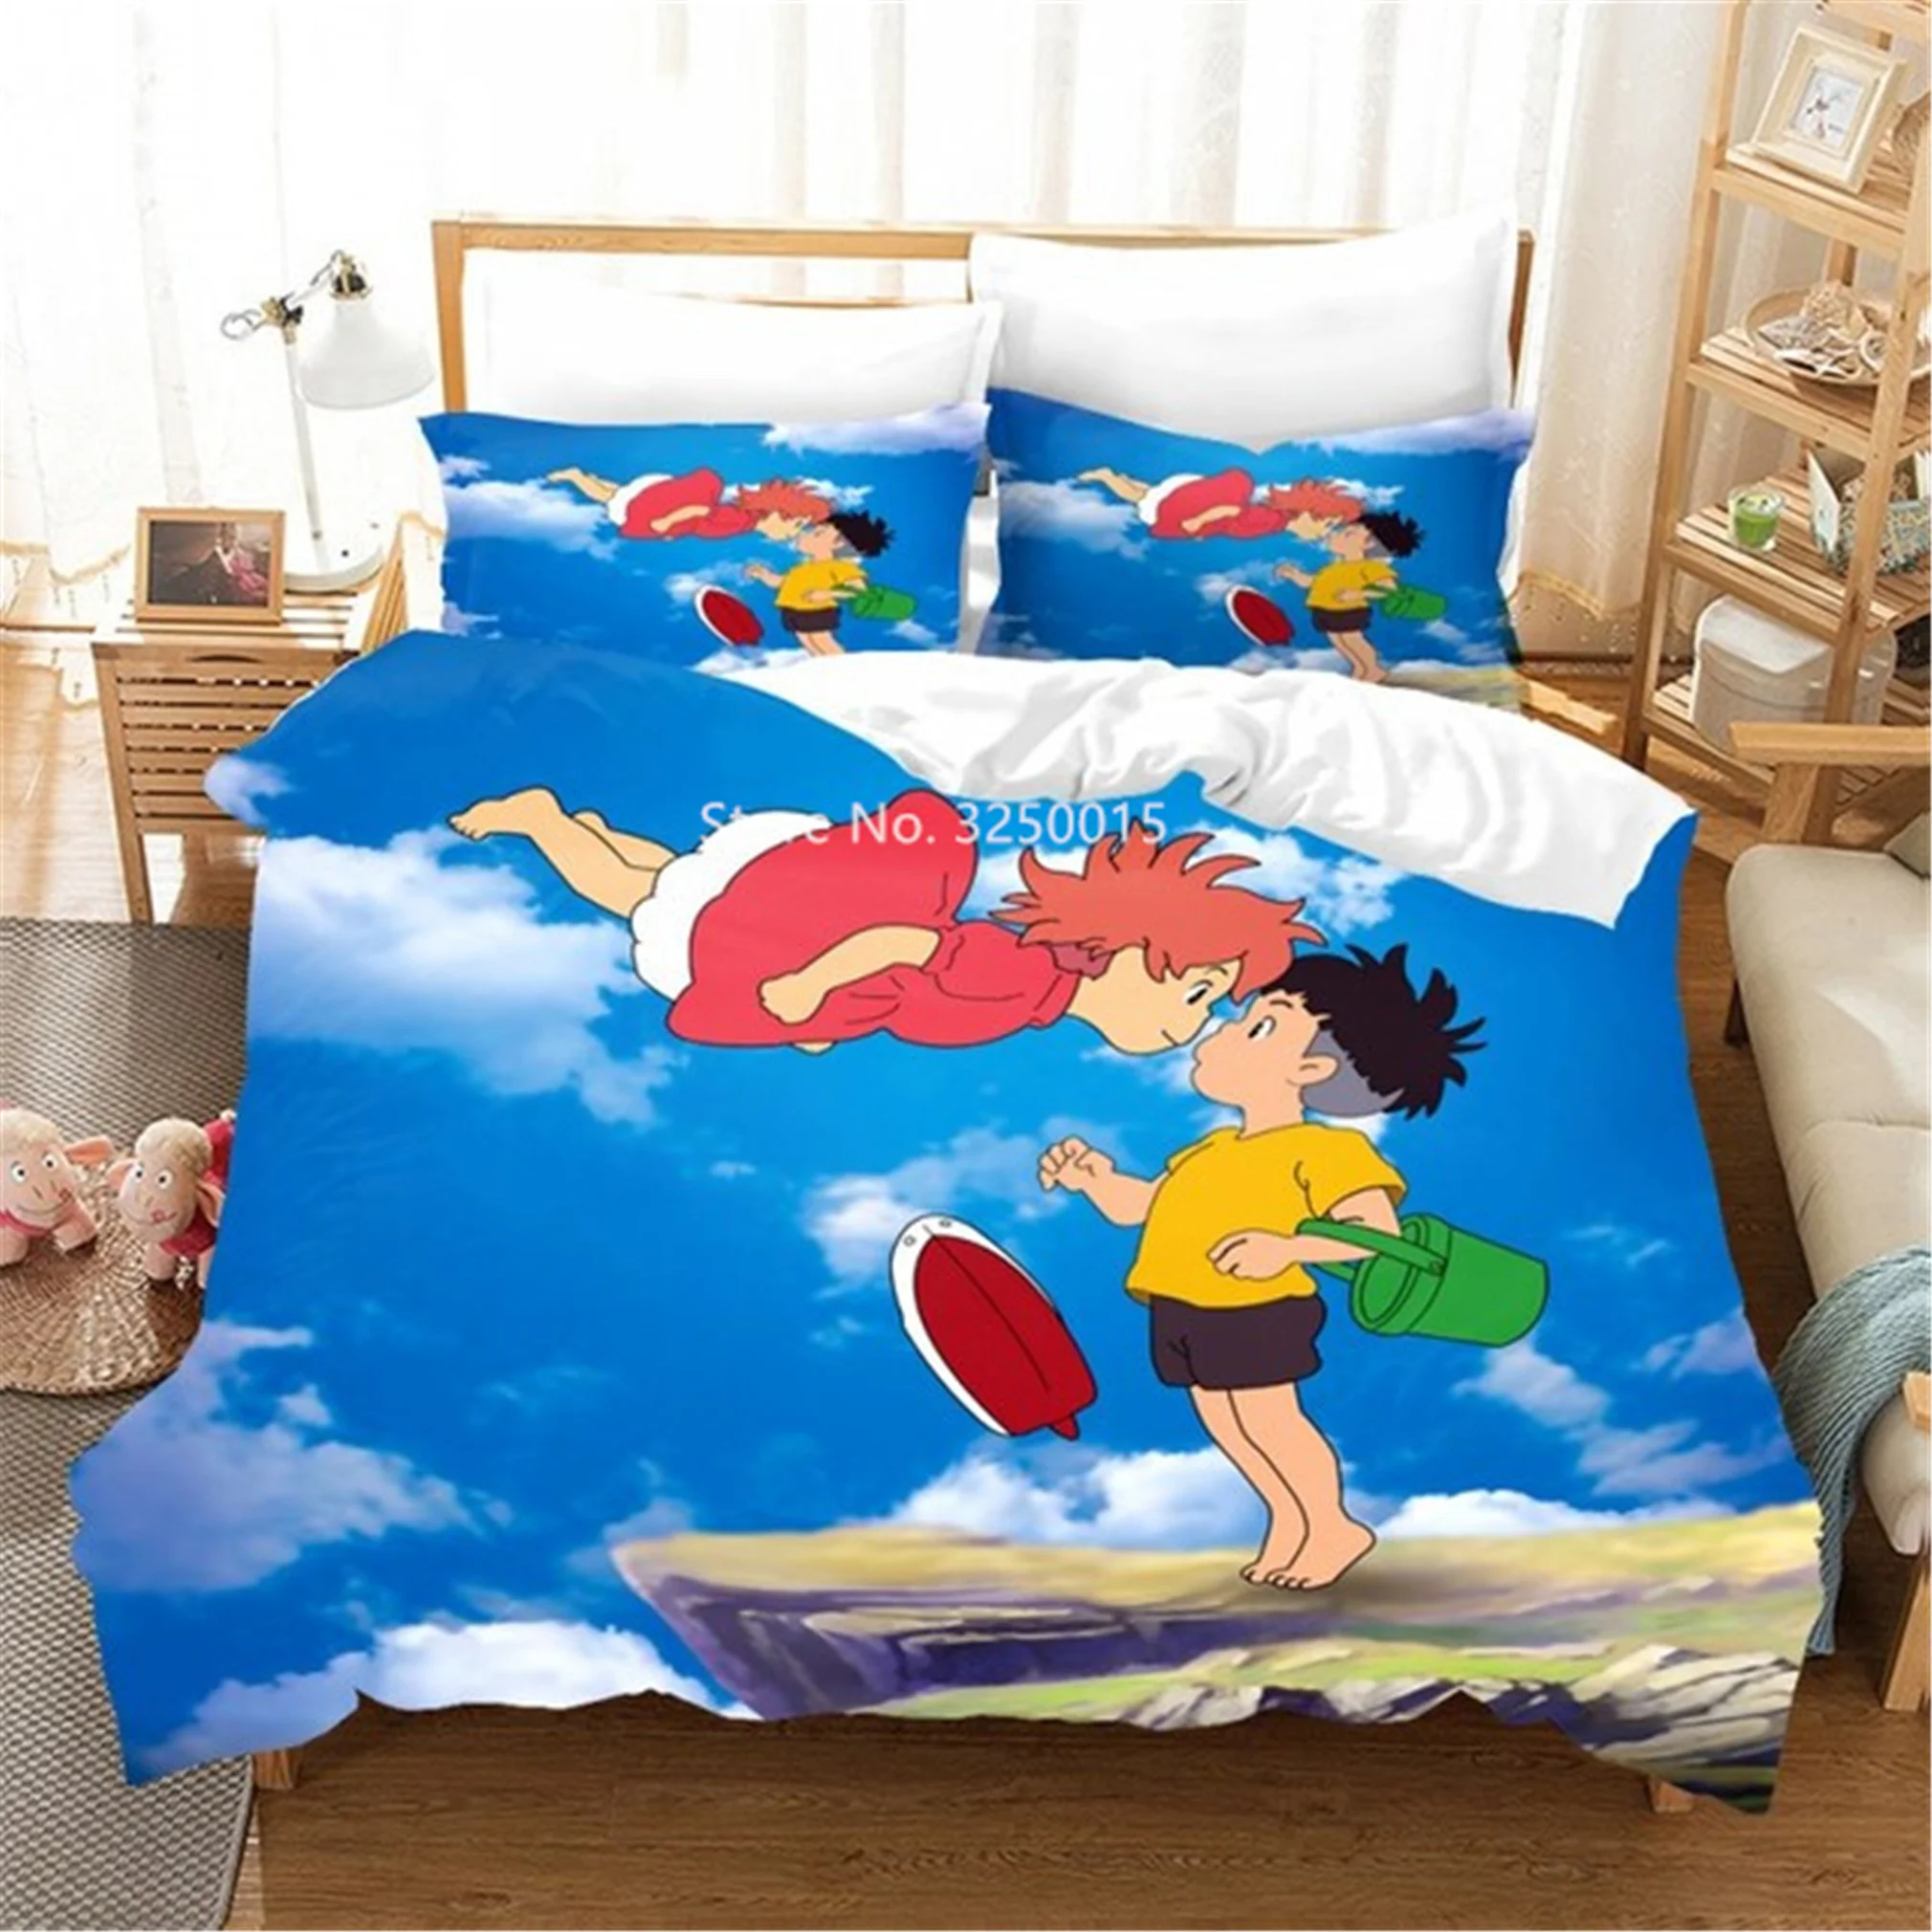 

Домашний текстиль, милый мультяшный рисунок Bo Niu and Sosuke, детское удобное одеяло, наволочка, Комплект постельного белья, украшение для спальни